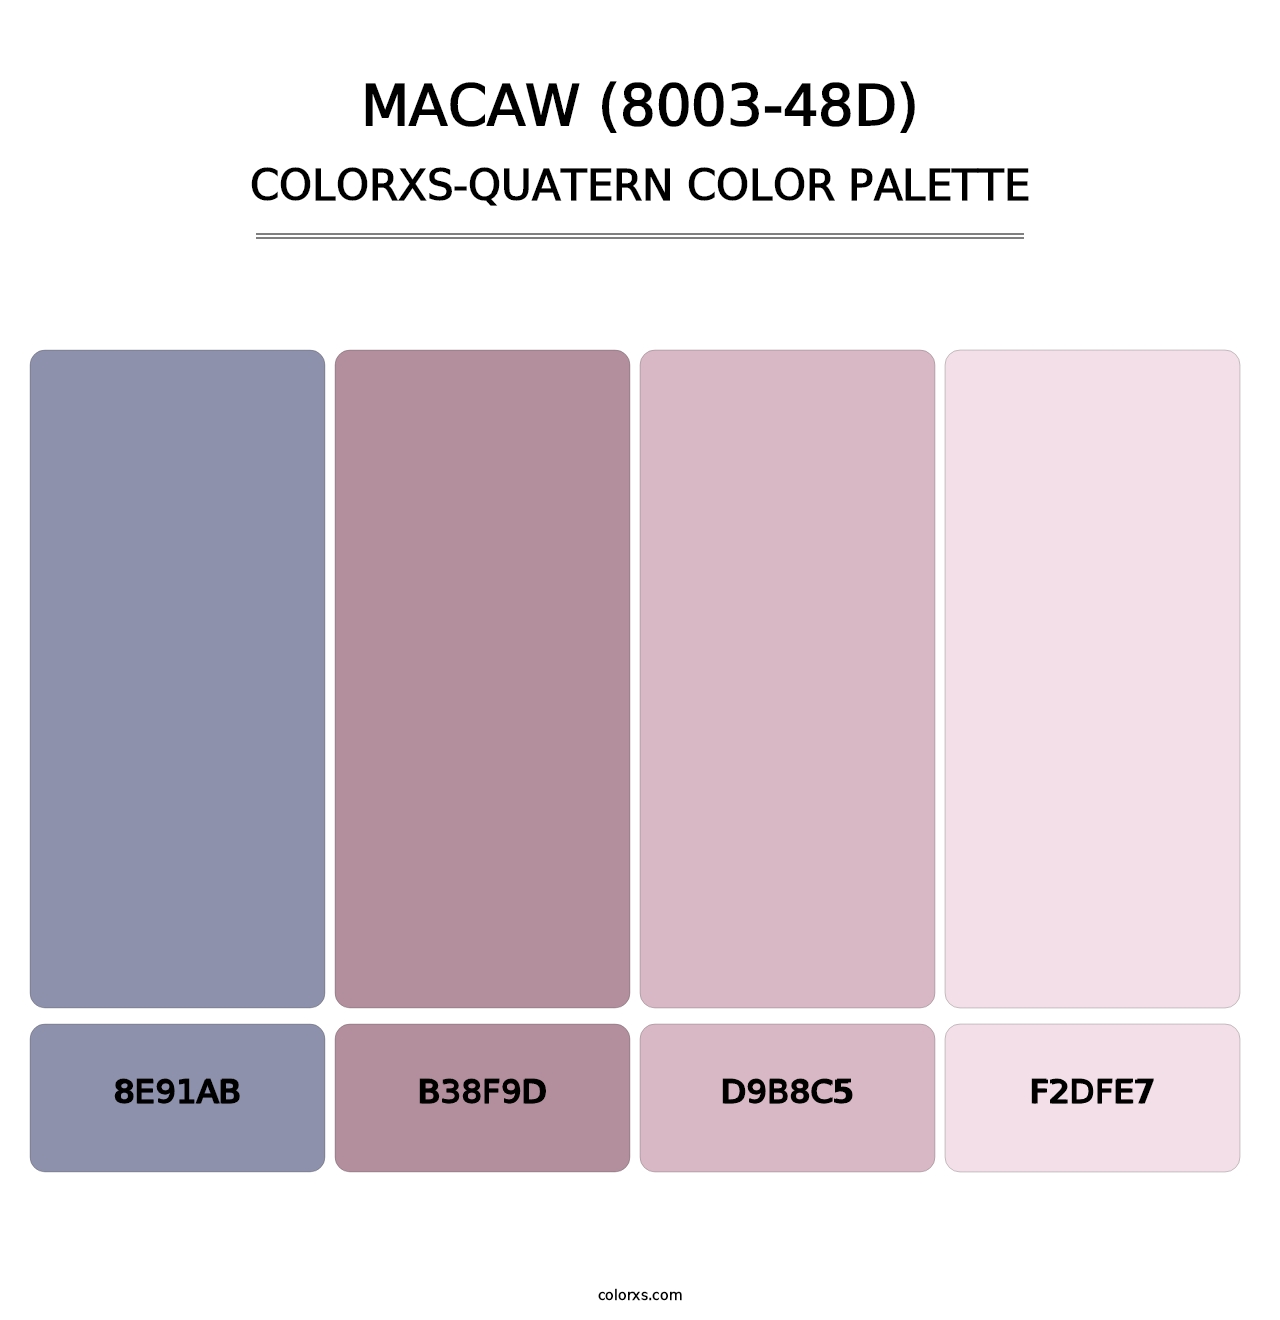 Macaw (8003-48D) - Colorxs Quatern Palette